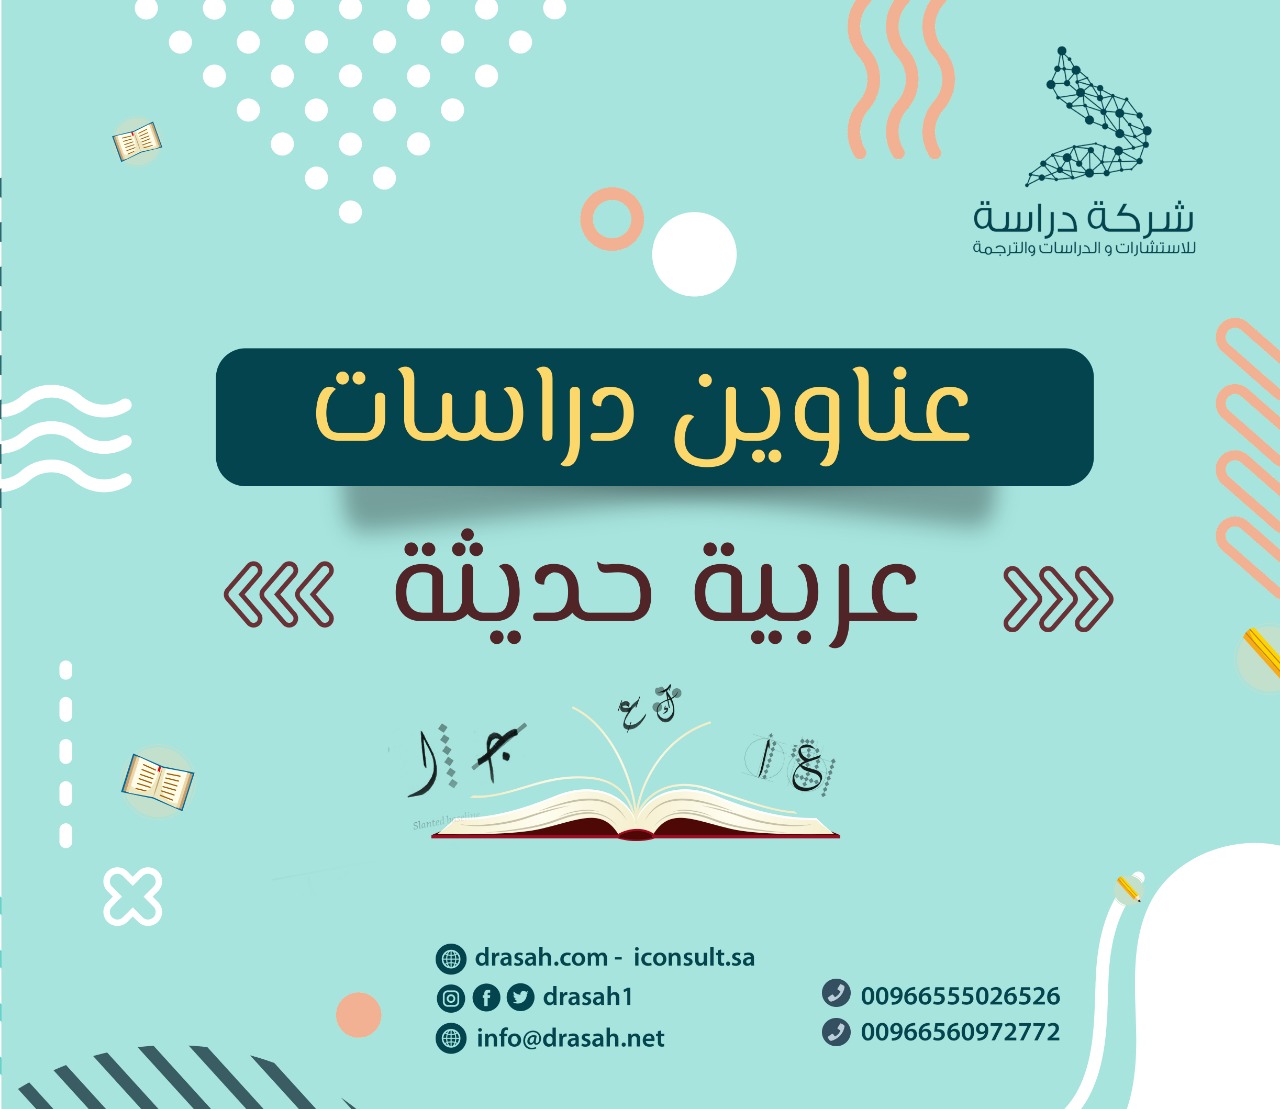 دراسات عربية حديثة حول :آثار القراءة على الفرد والمجتمع